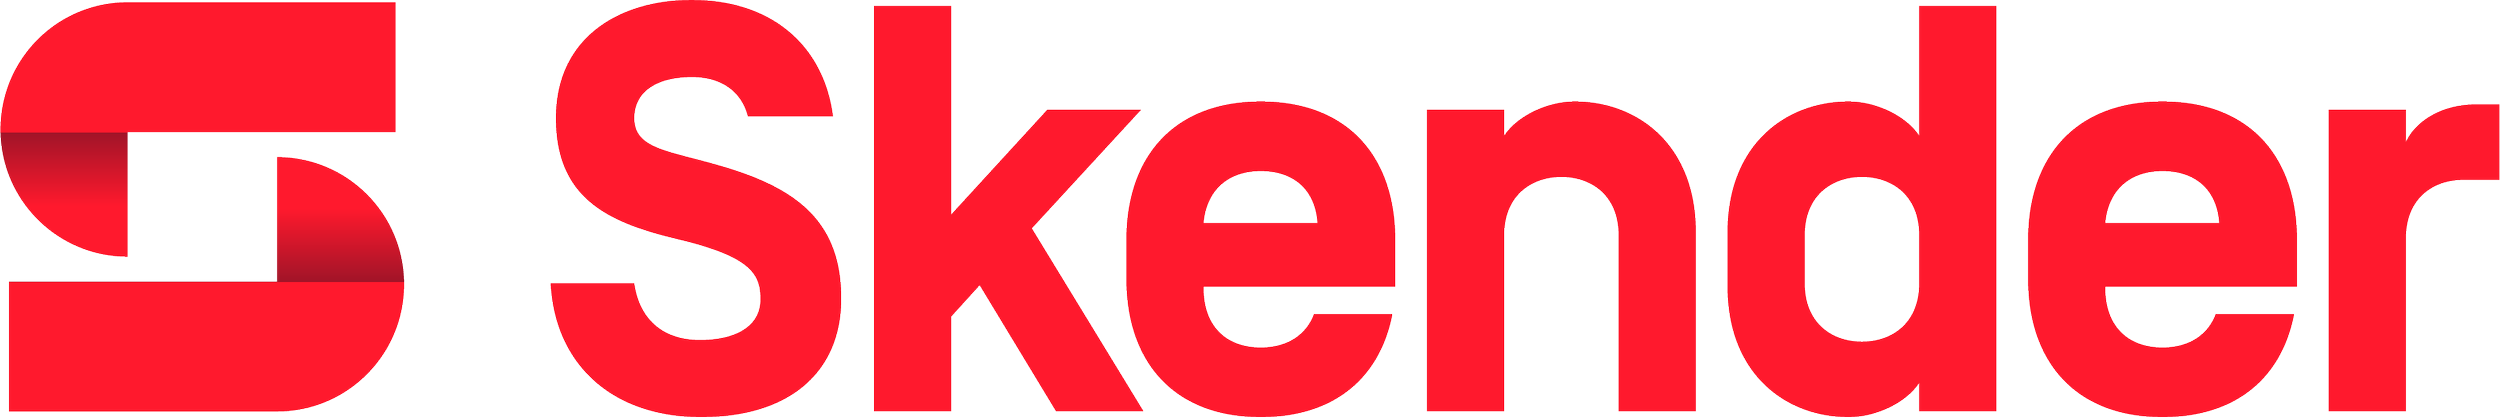 Skender_Logo_Red_RGB.png